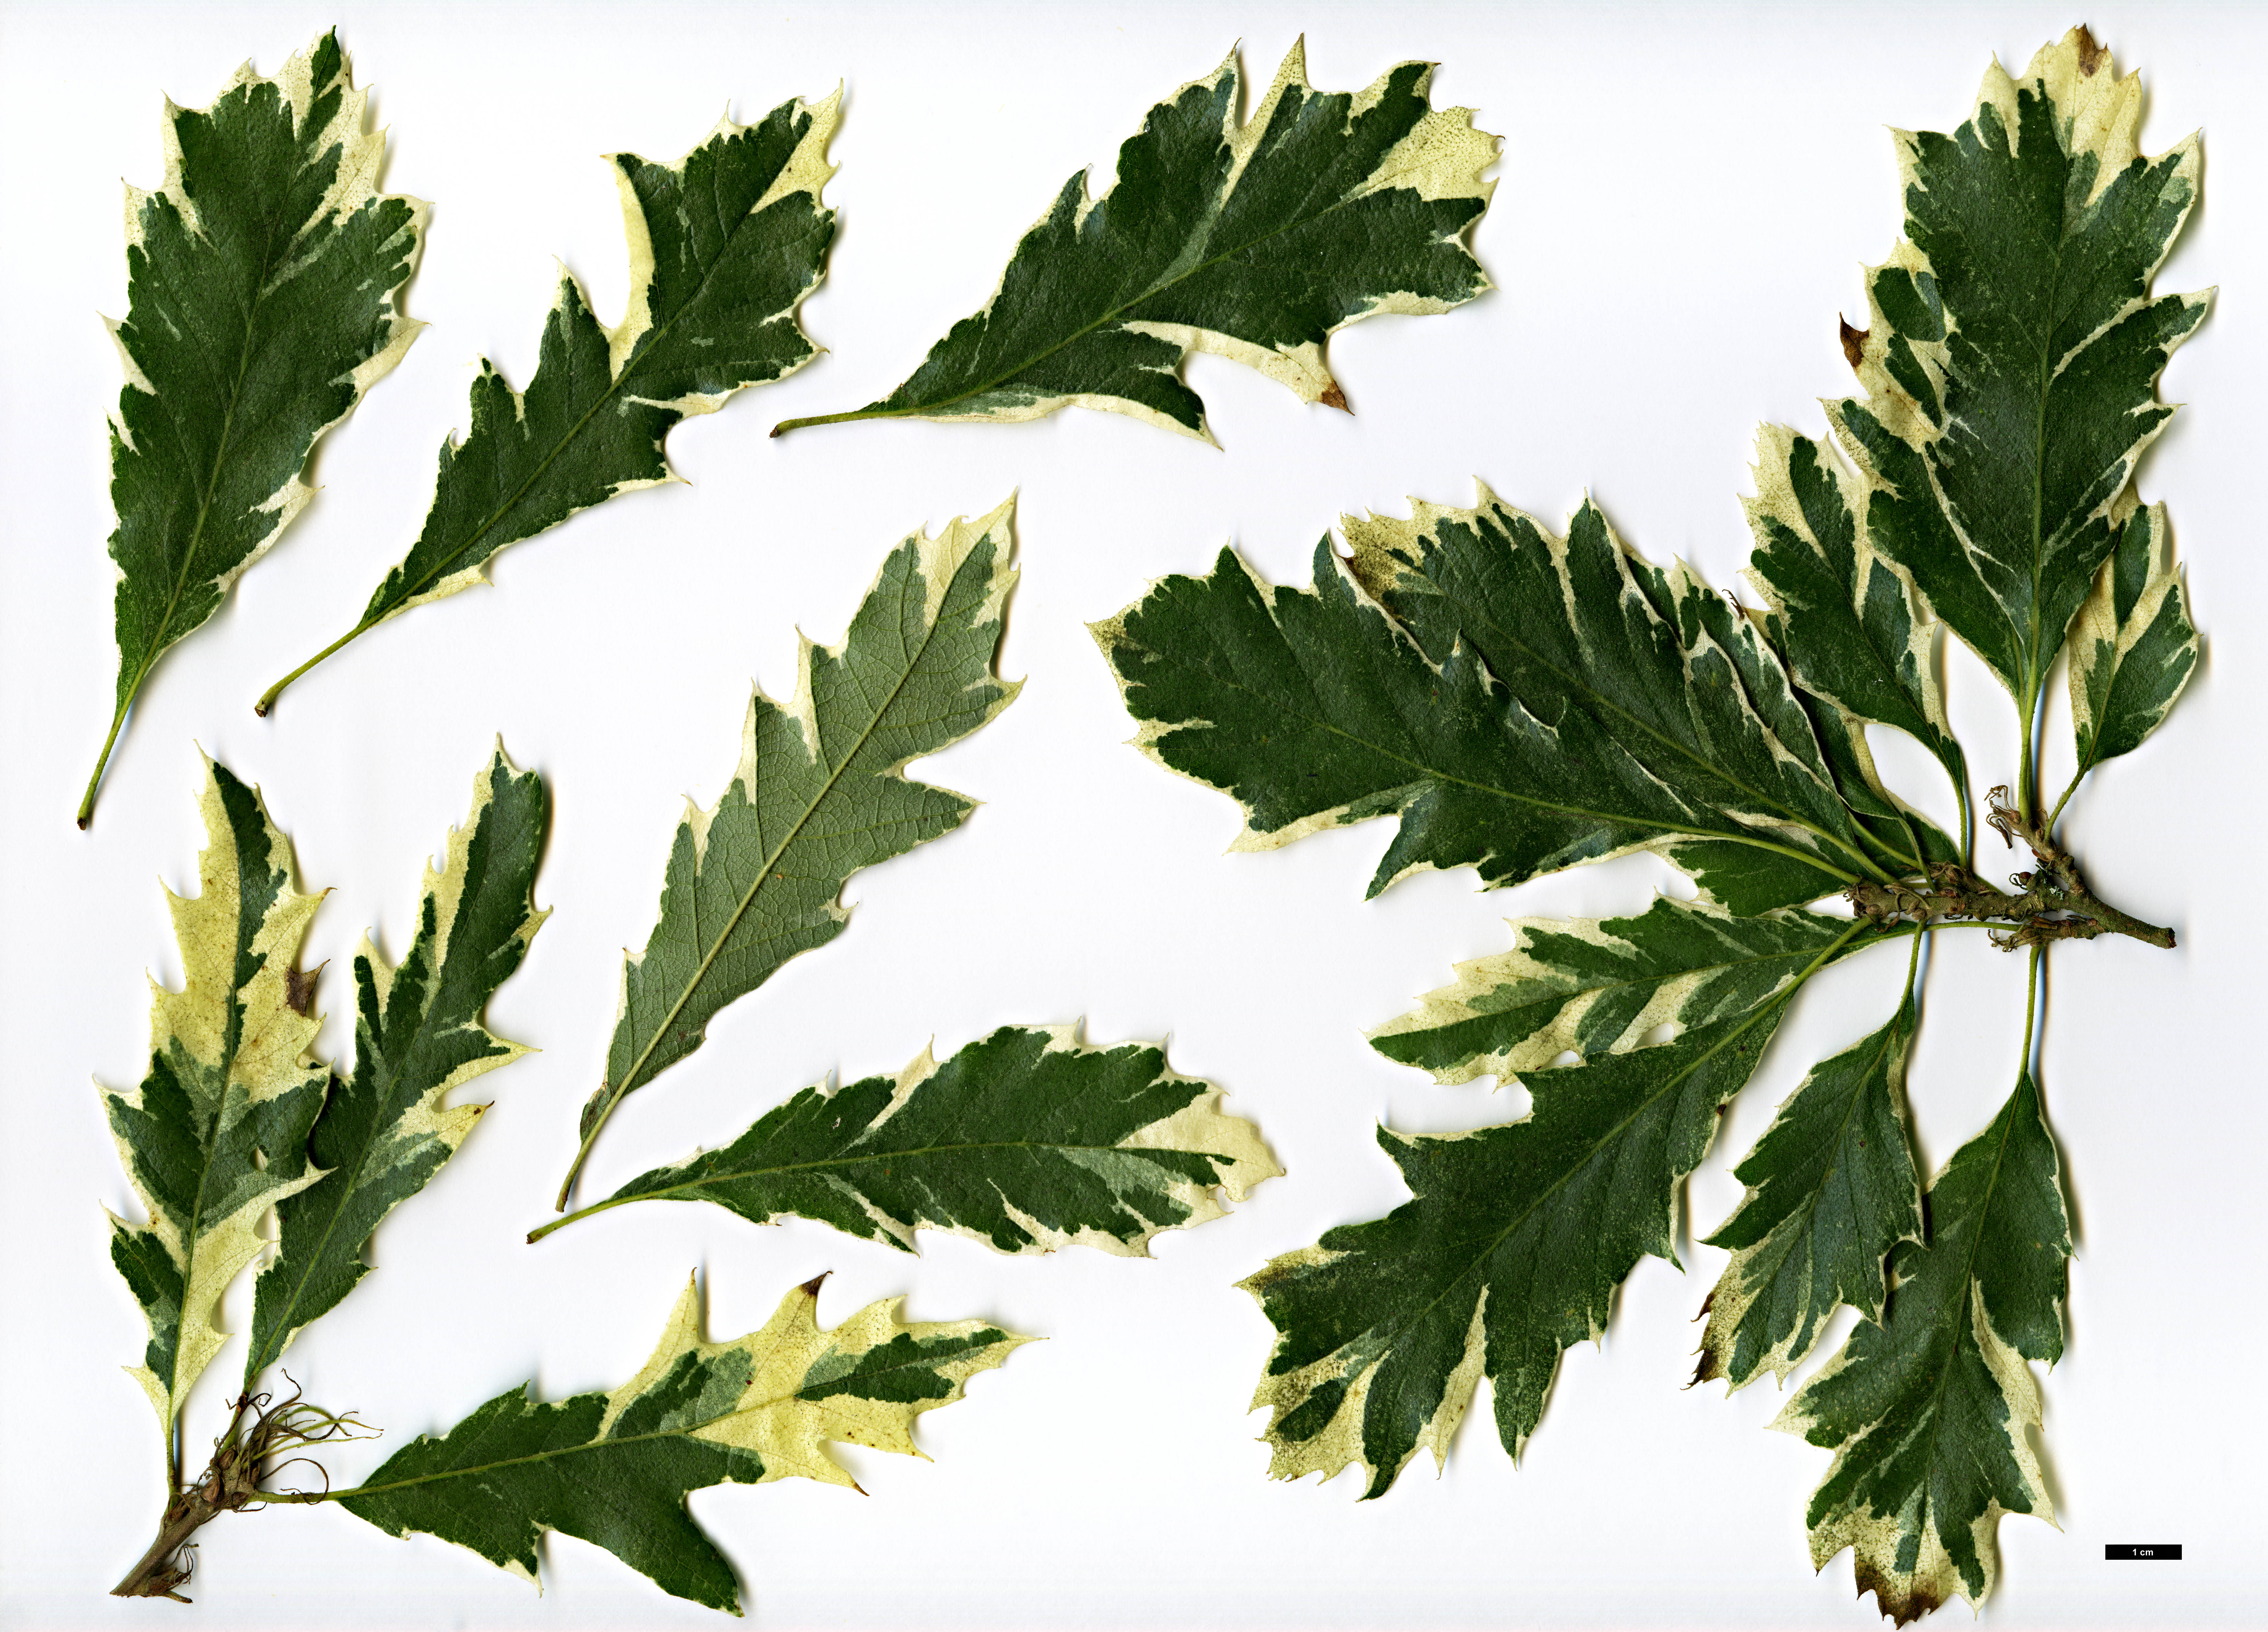 High resolution image: Family: Fagaceae - Genus: Quercus - Taxon: cerris - SpeciesSub: 'Argenteovariegata'